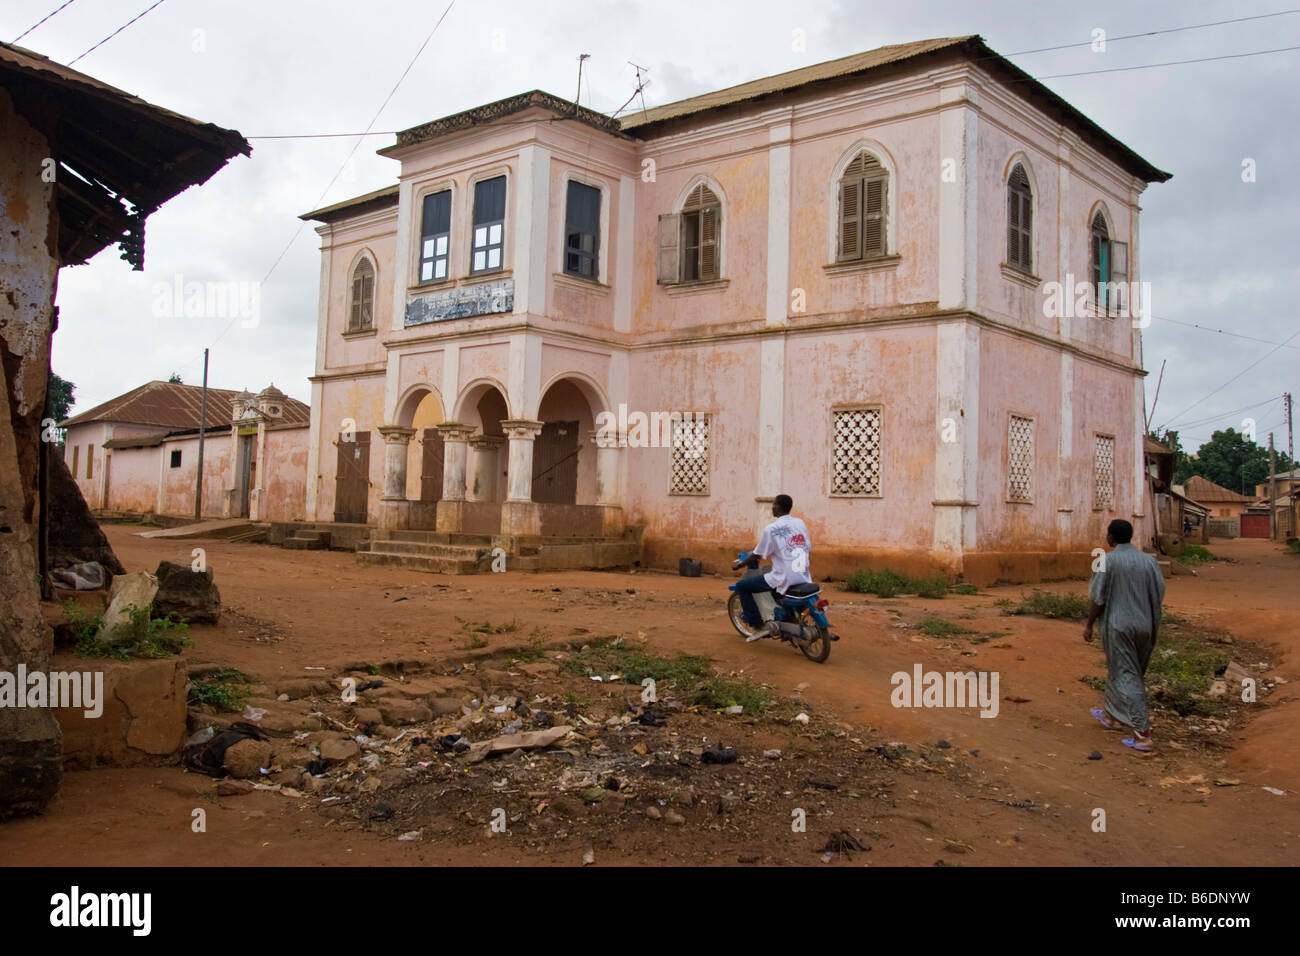 Architektur der Kolonialzeit in Abomey, Benin. Stockfoto